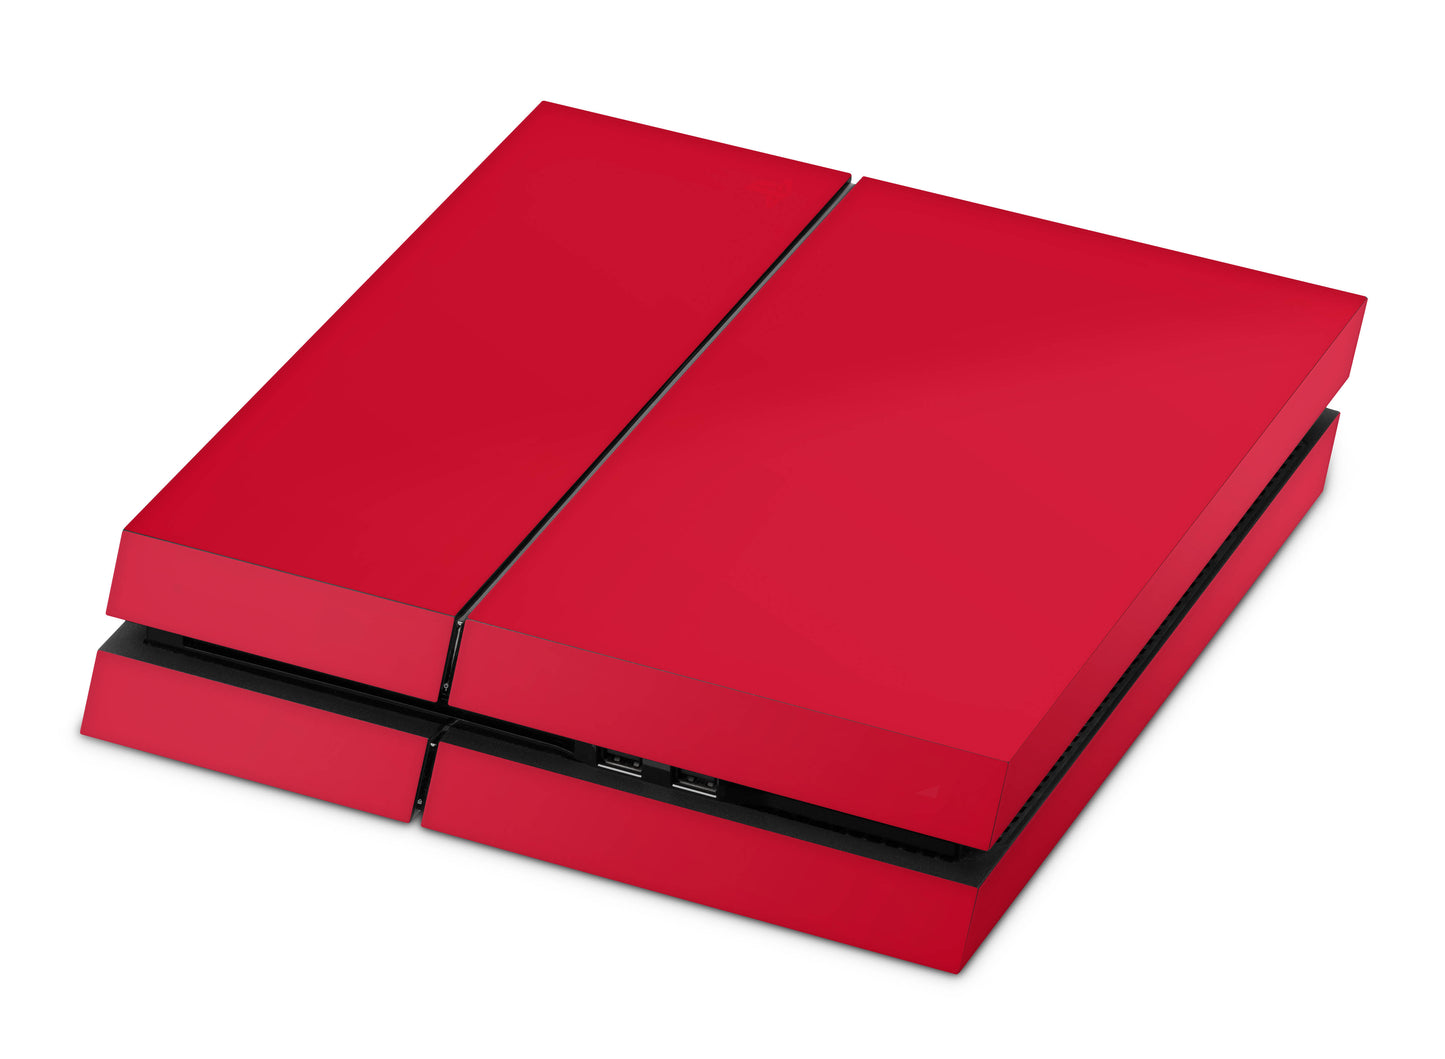 Playstation 4 Skin & Wrap Design Aufkleber Folie für PS4 Konsole 1.Generation solid state red Aufkleber skins4u   